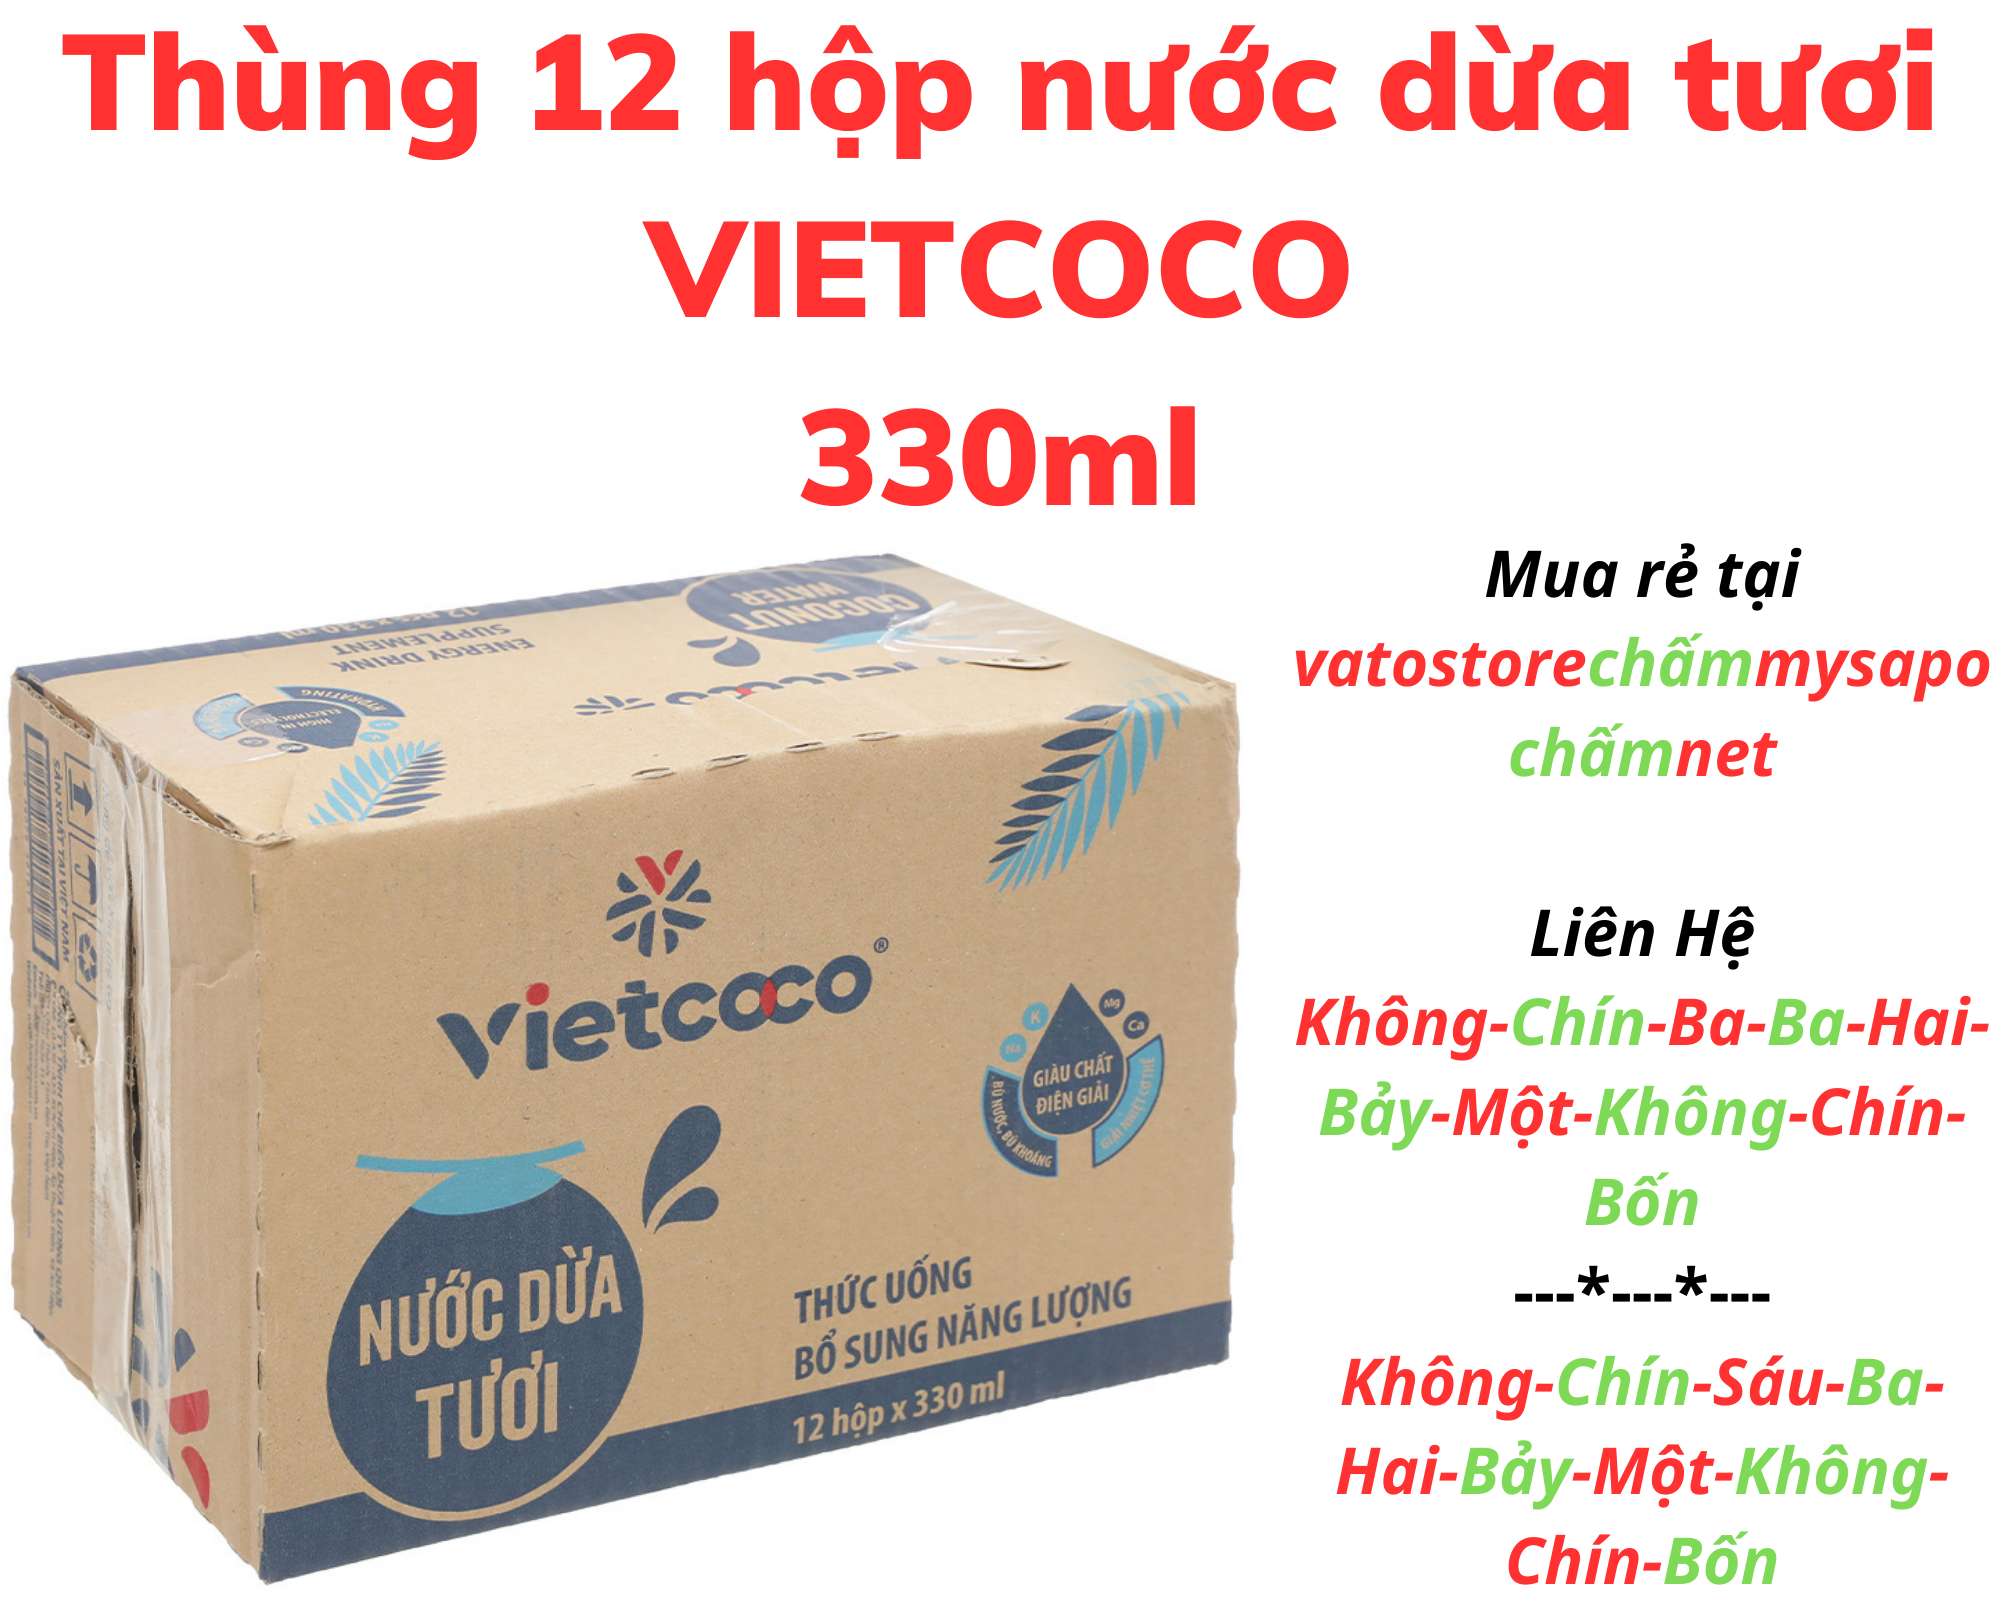 Thùng 12 hộp nước dừa tươi VIETCOCO 330ml Lốc 6 hộp nước dừa tươi VIETCOCO